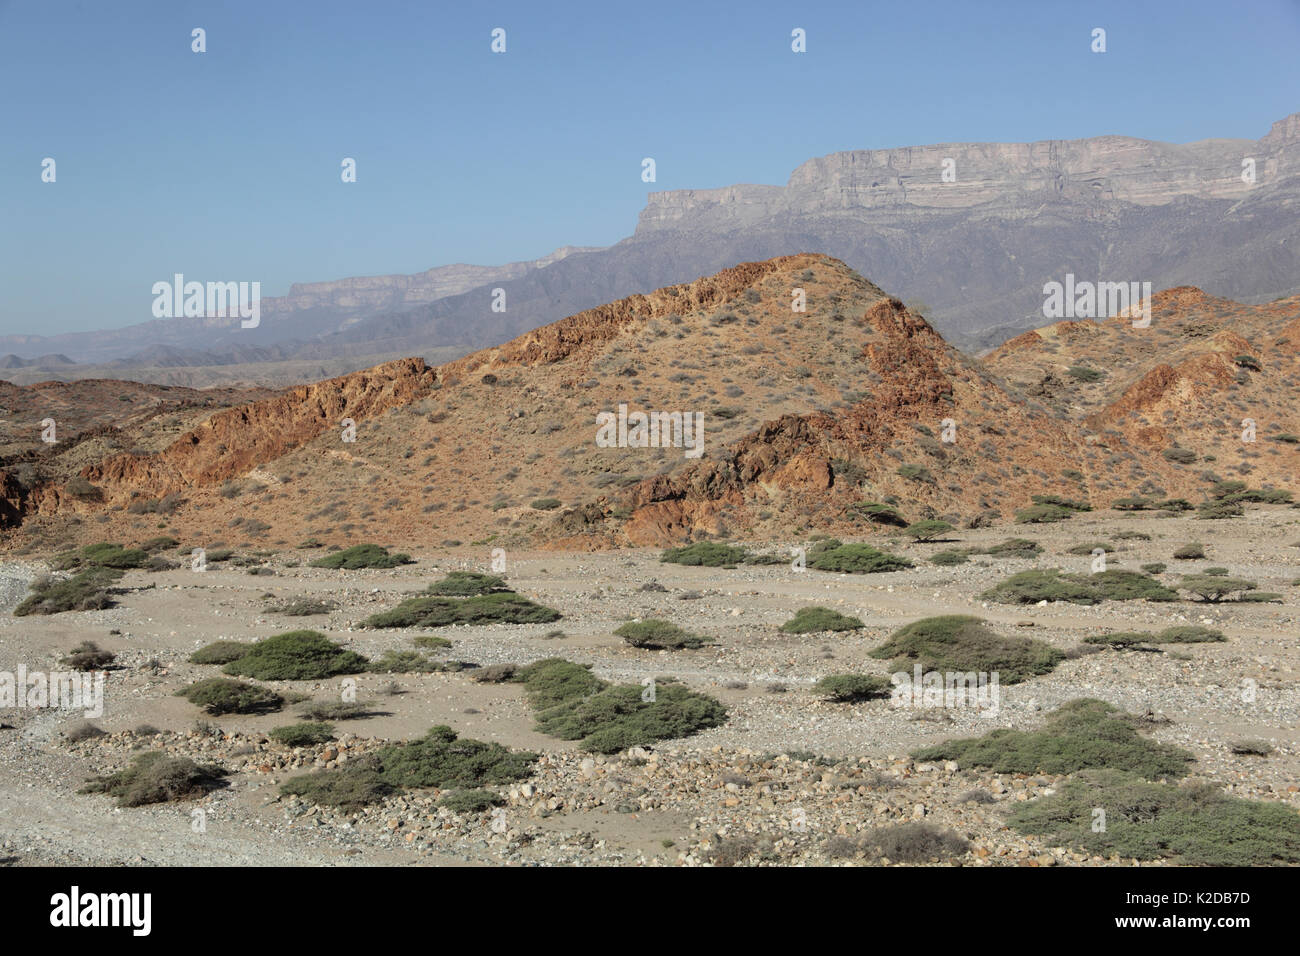 Jabal Samhan, montagnes et wadi (lit de rivière à sec), Oman, décembre Banque D'Images